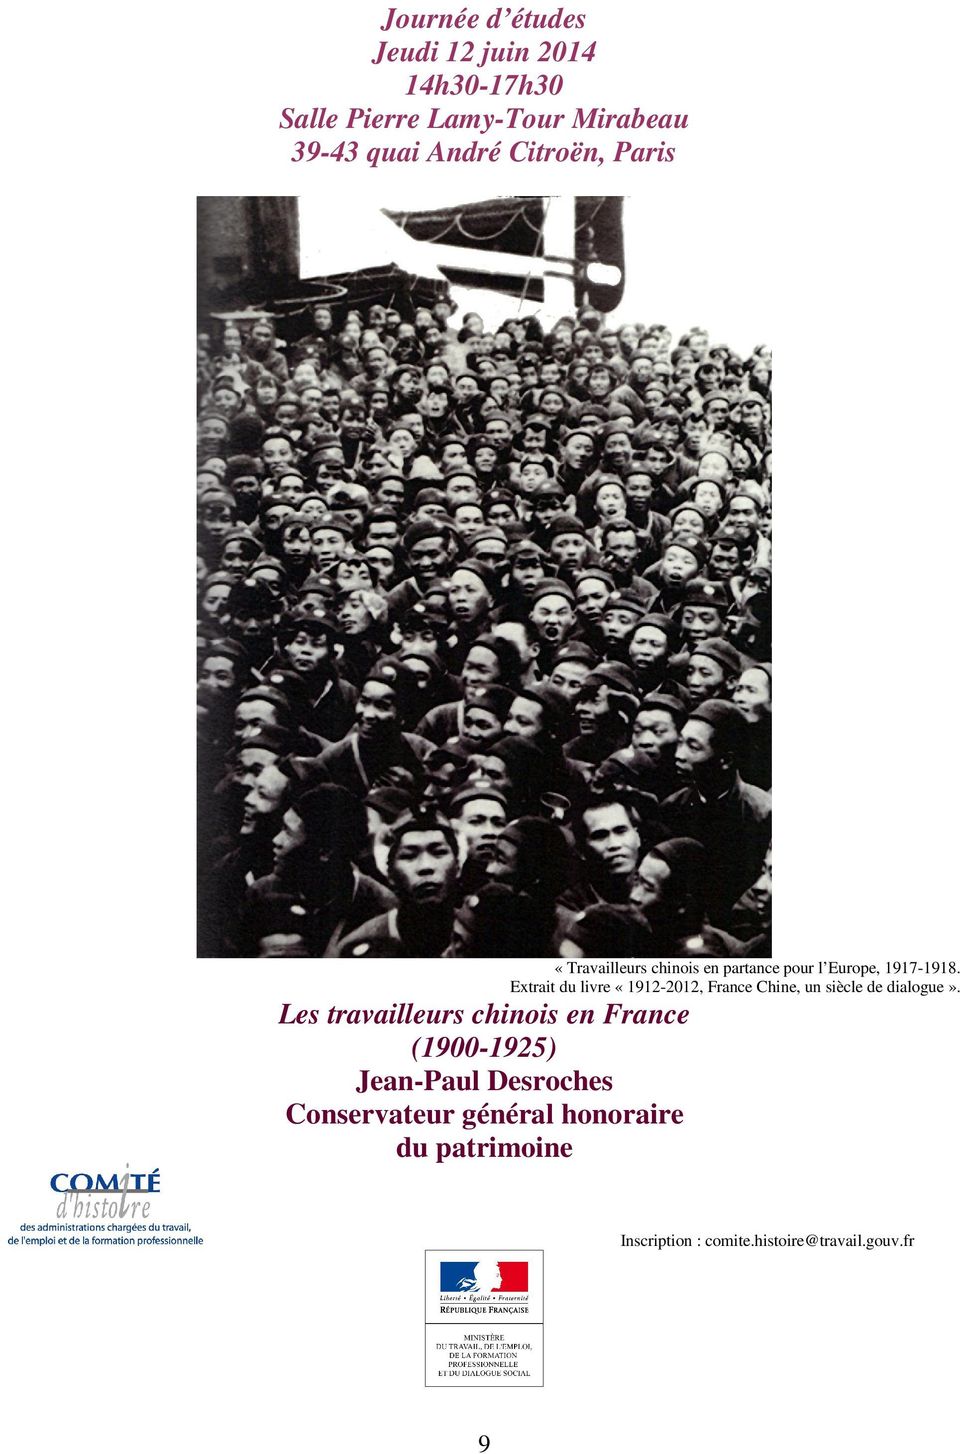 Extrait du livre «1912-2012, France Chine, un siècle de dialogue».